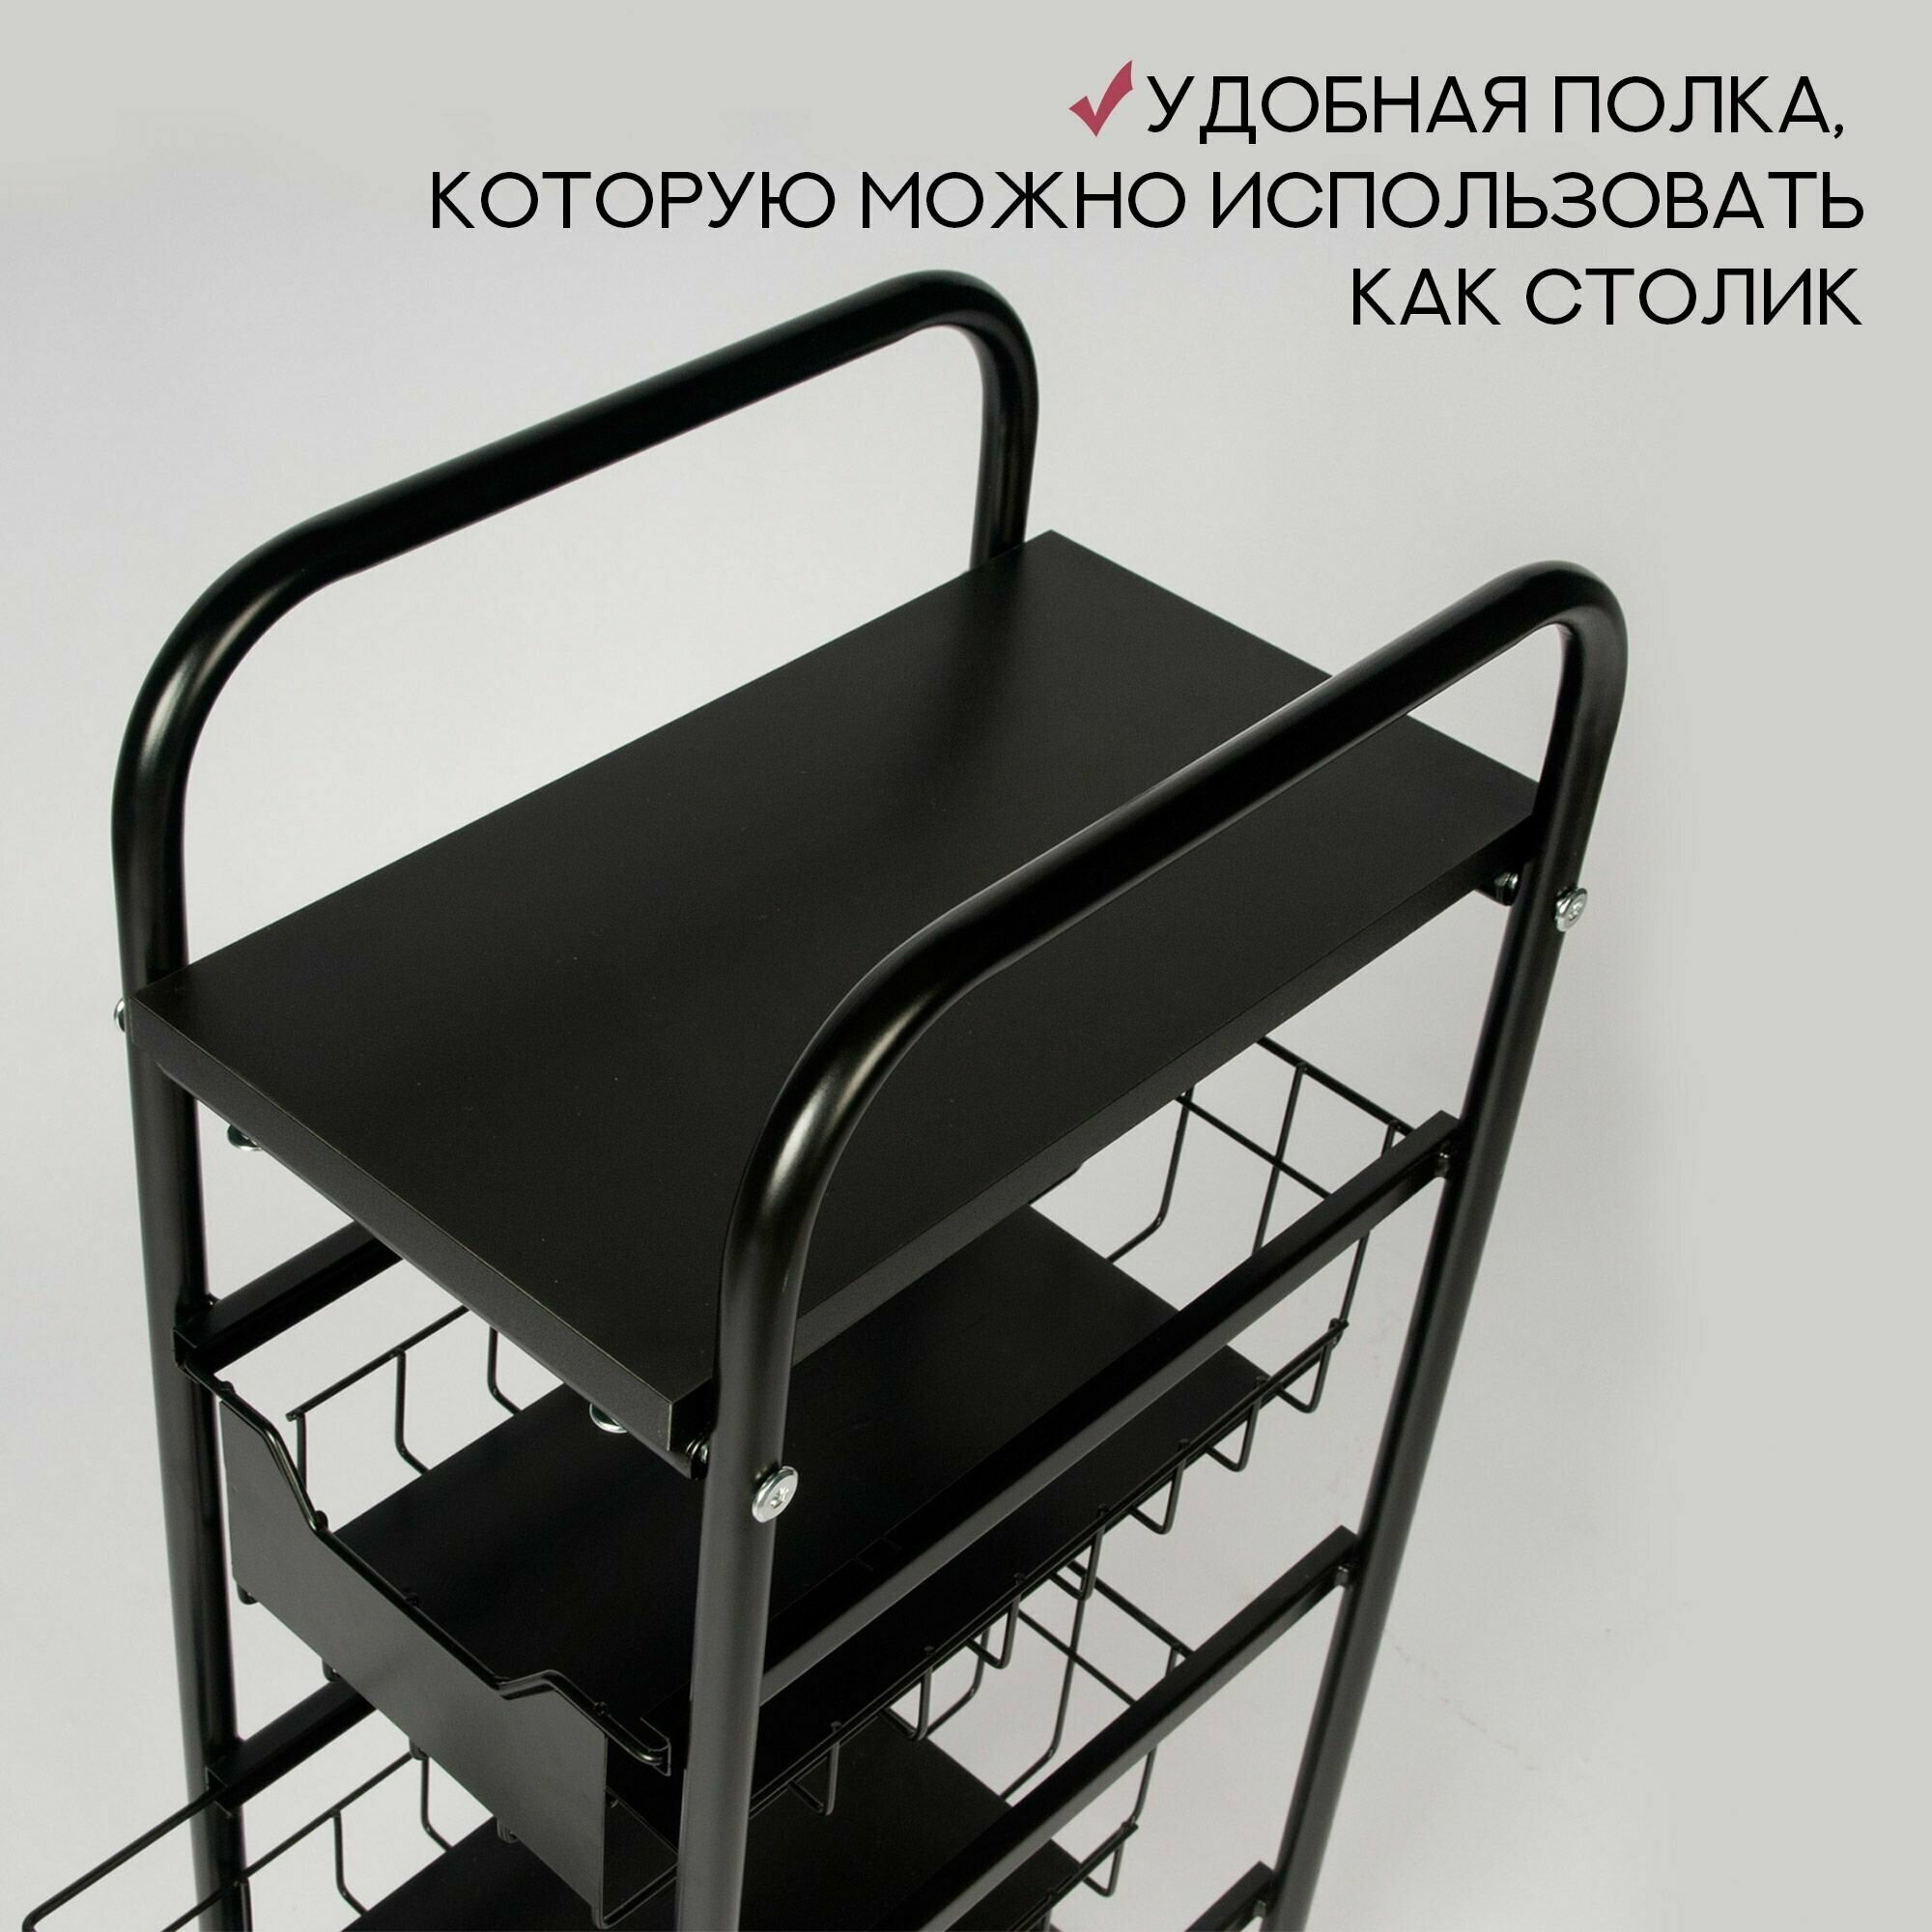 Этажерка для кухни и ванной узкая напольная металлическая с выдвижными корзинами и столиком компакта 86х36х24 см, черный матовый, стеллаж-этажерка